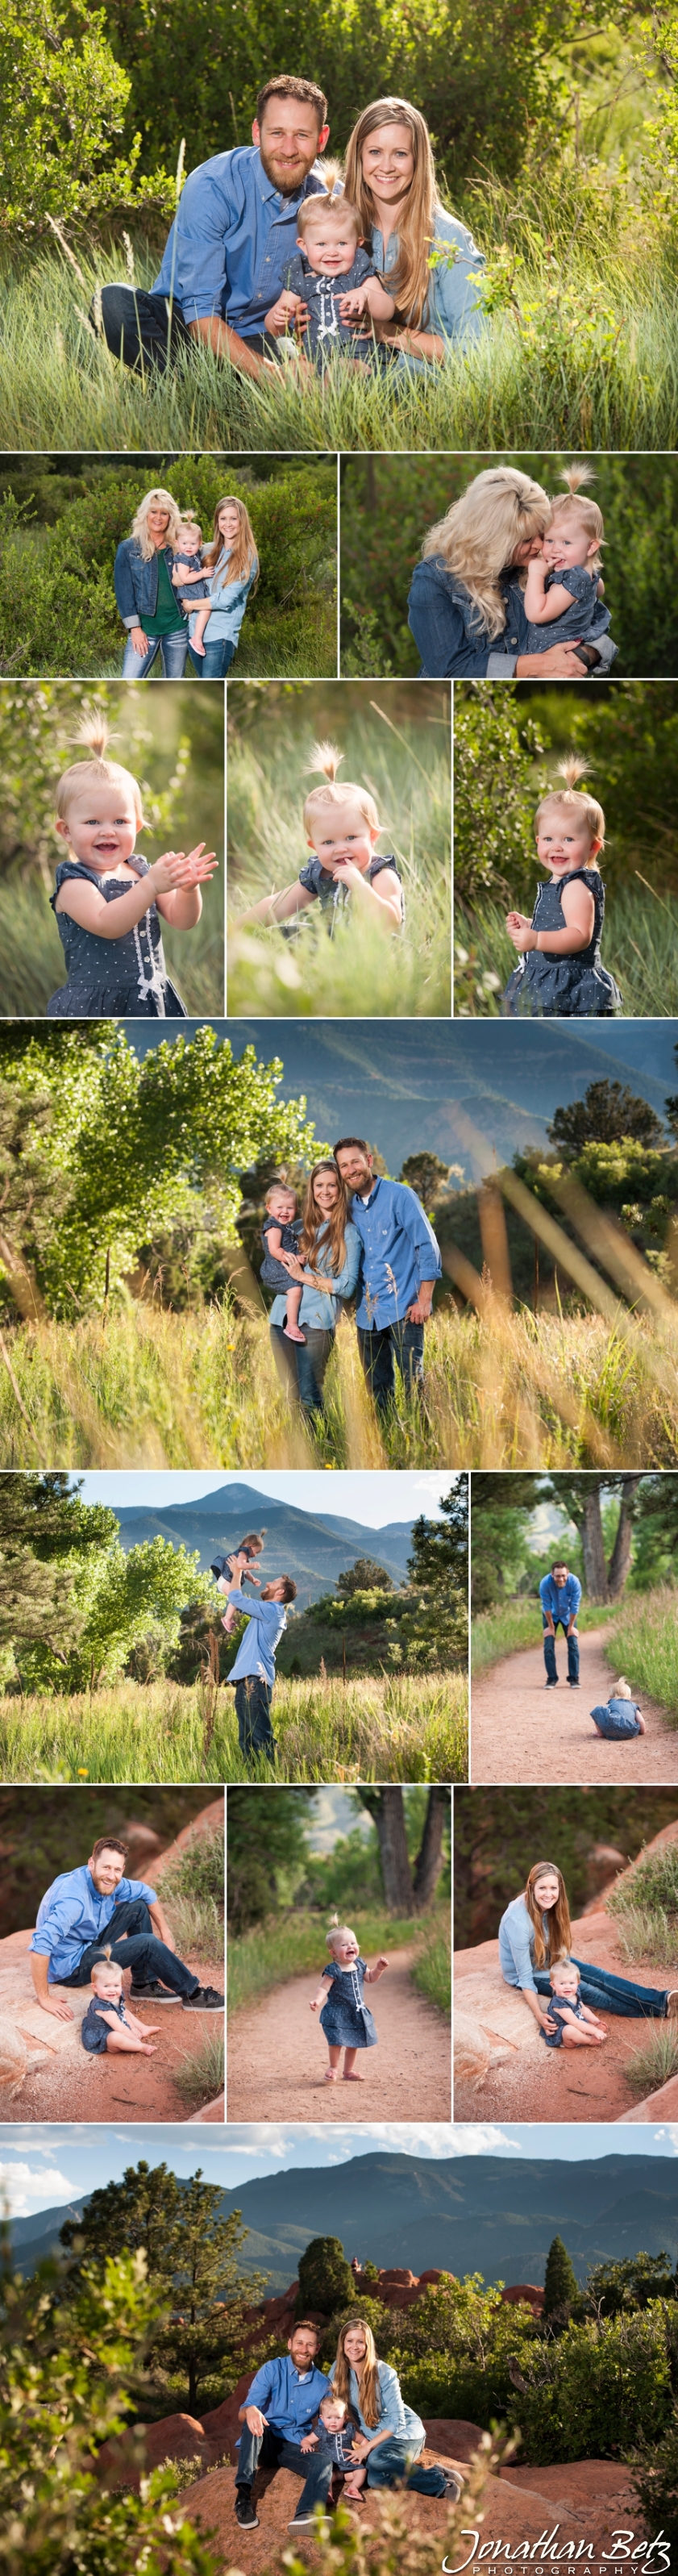 Colorado Springs Family Photographer Garden of the Gods Jonathan Betz Photography